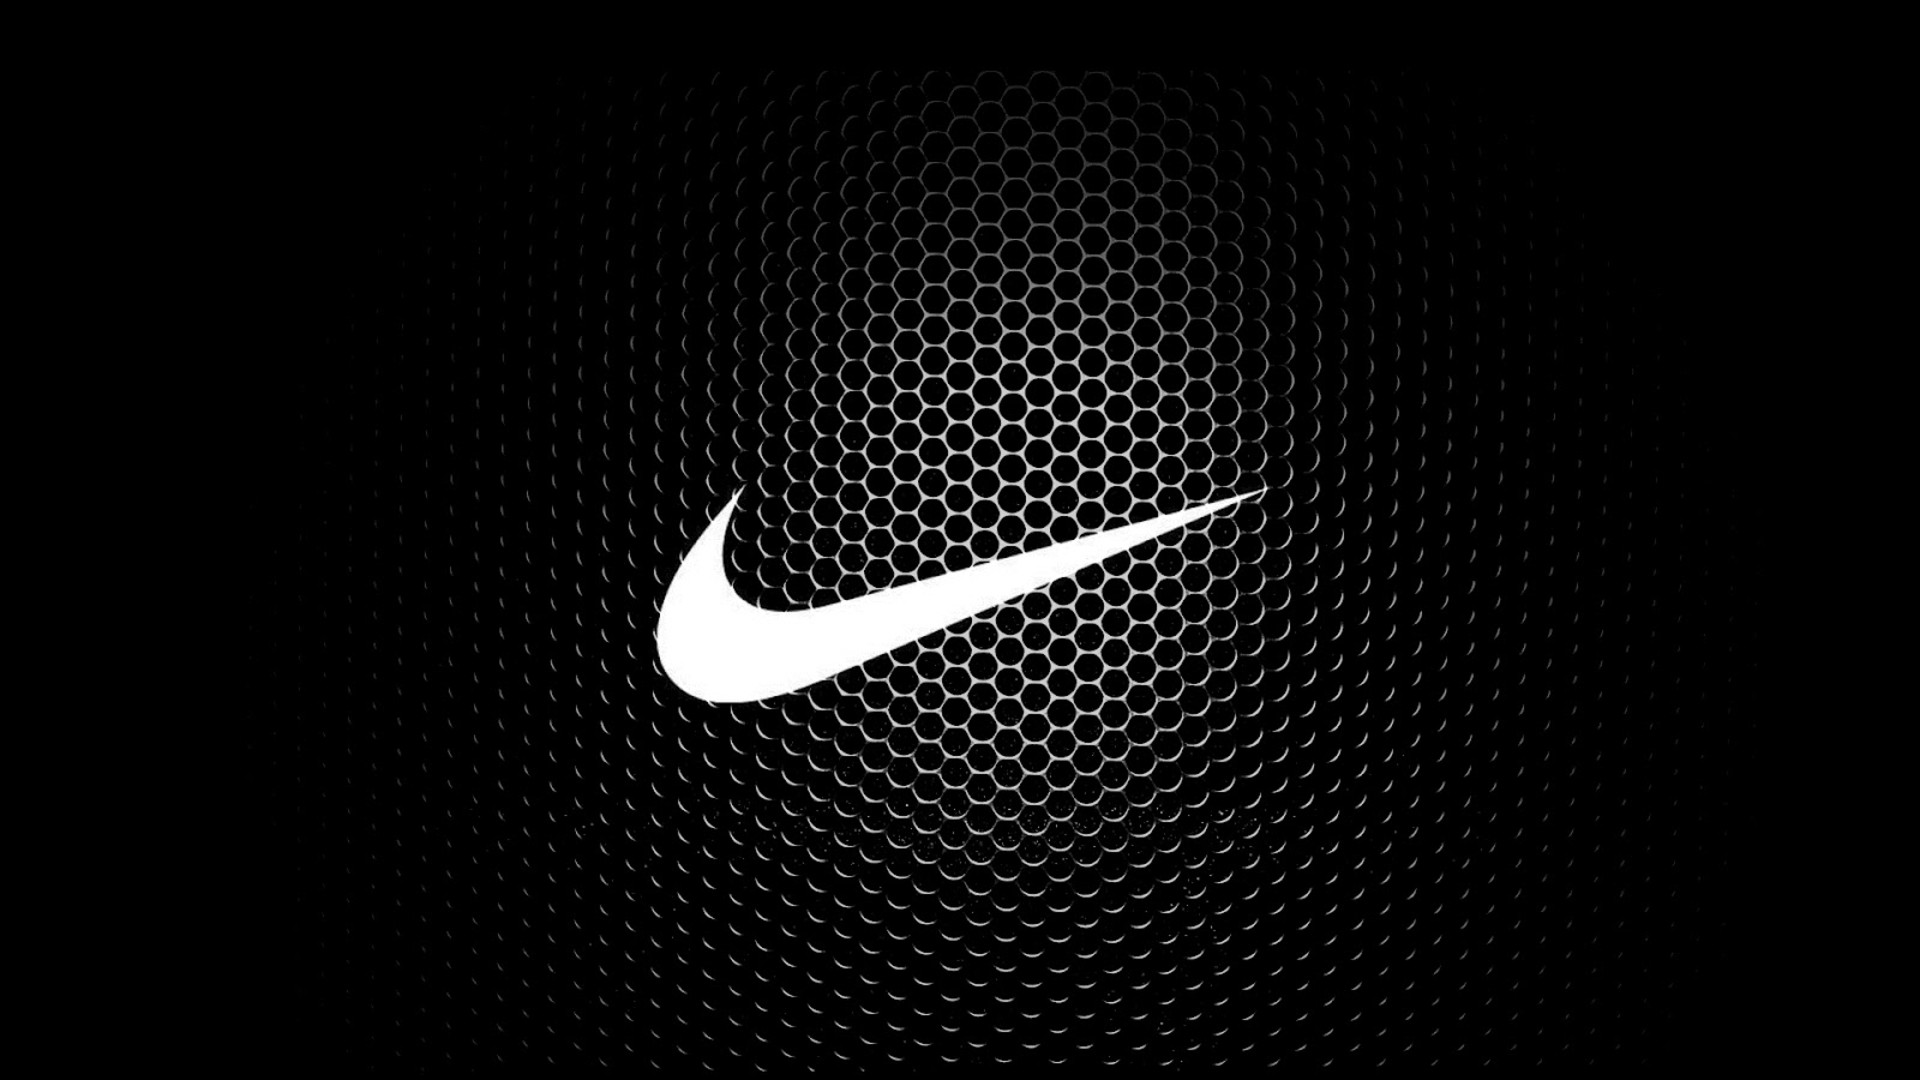 Nike Wallpaper HD 1080p 75 images